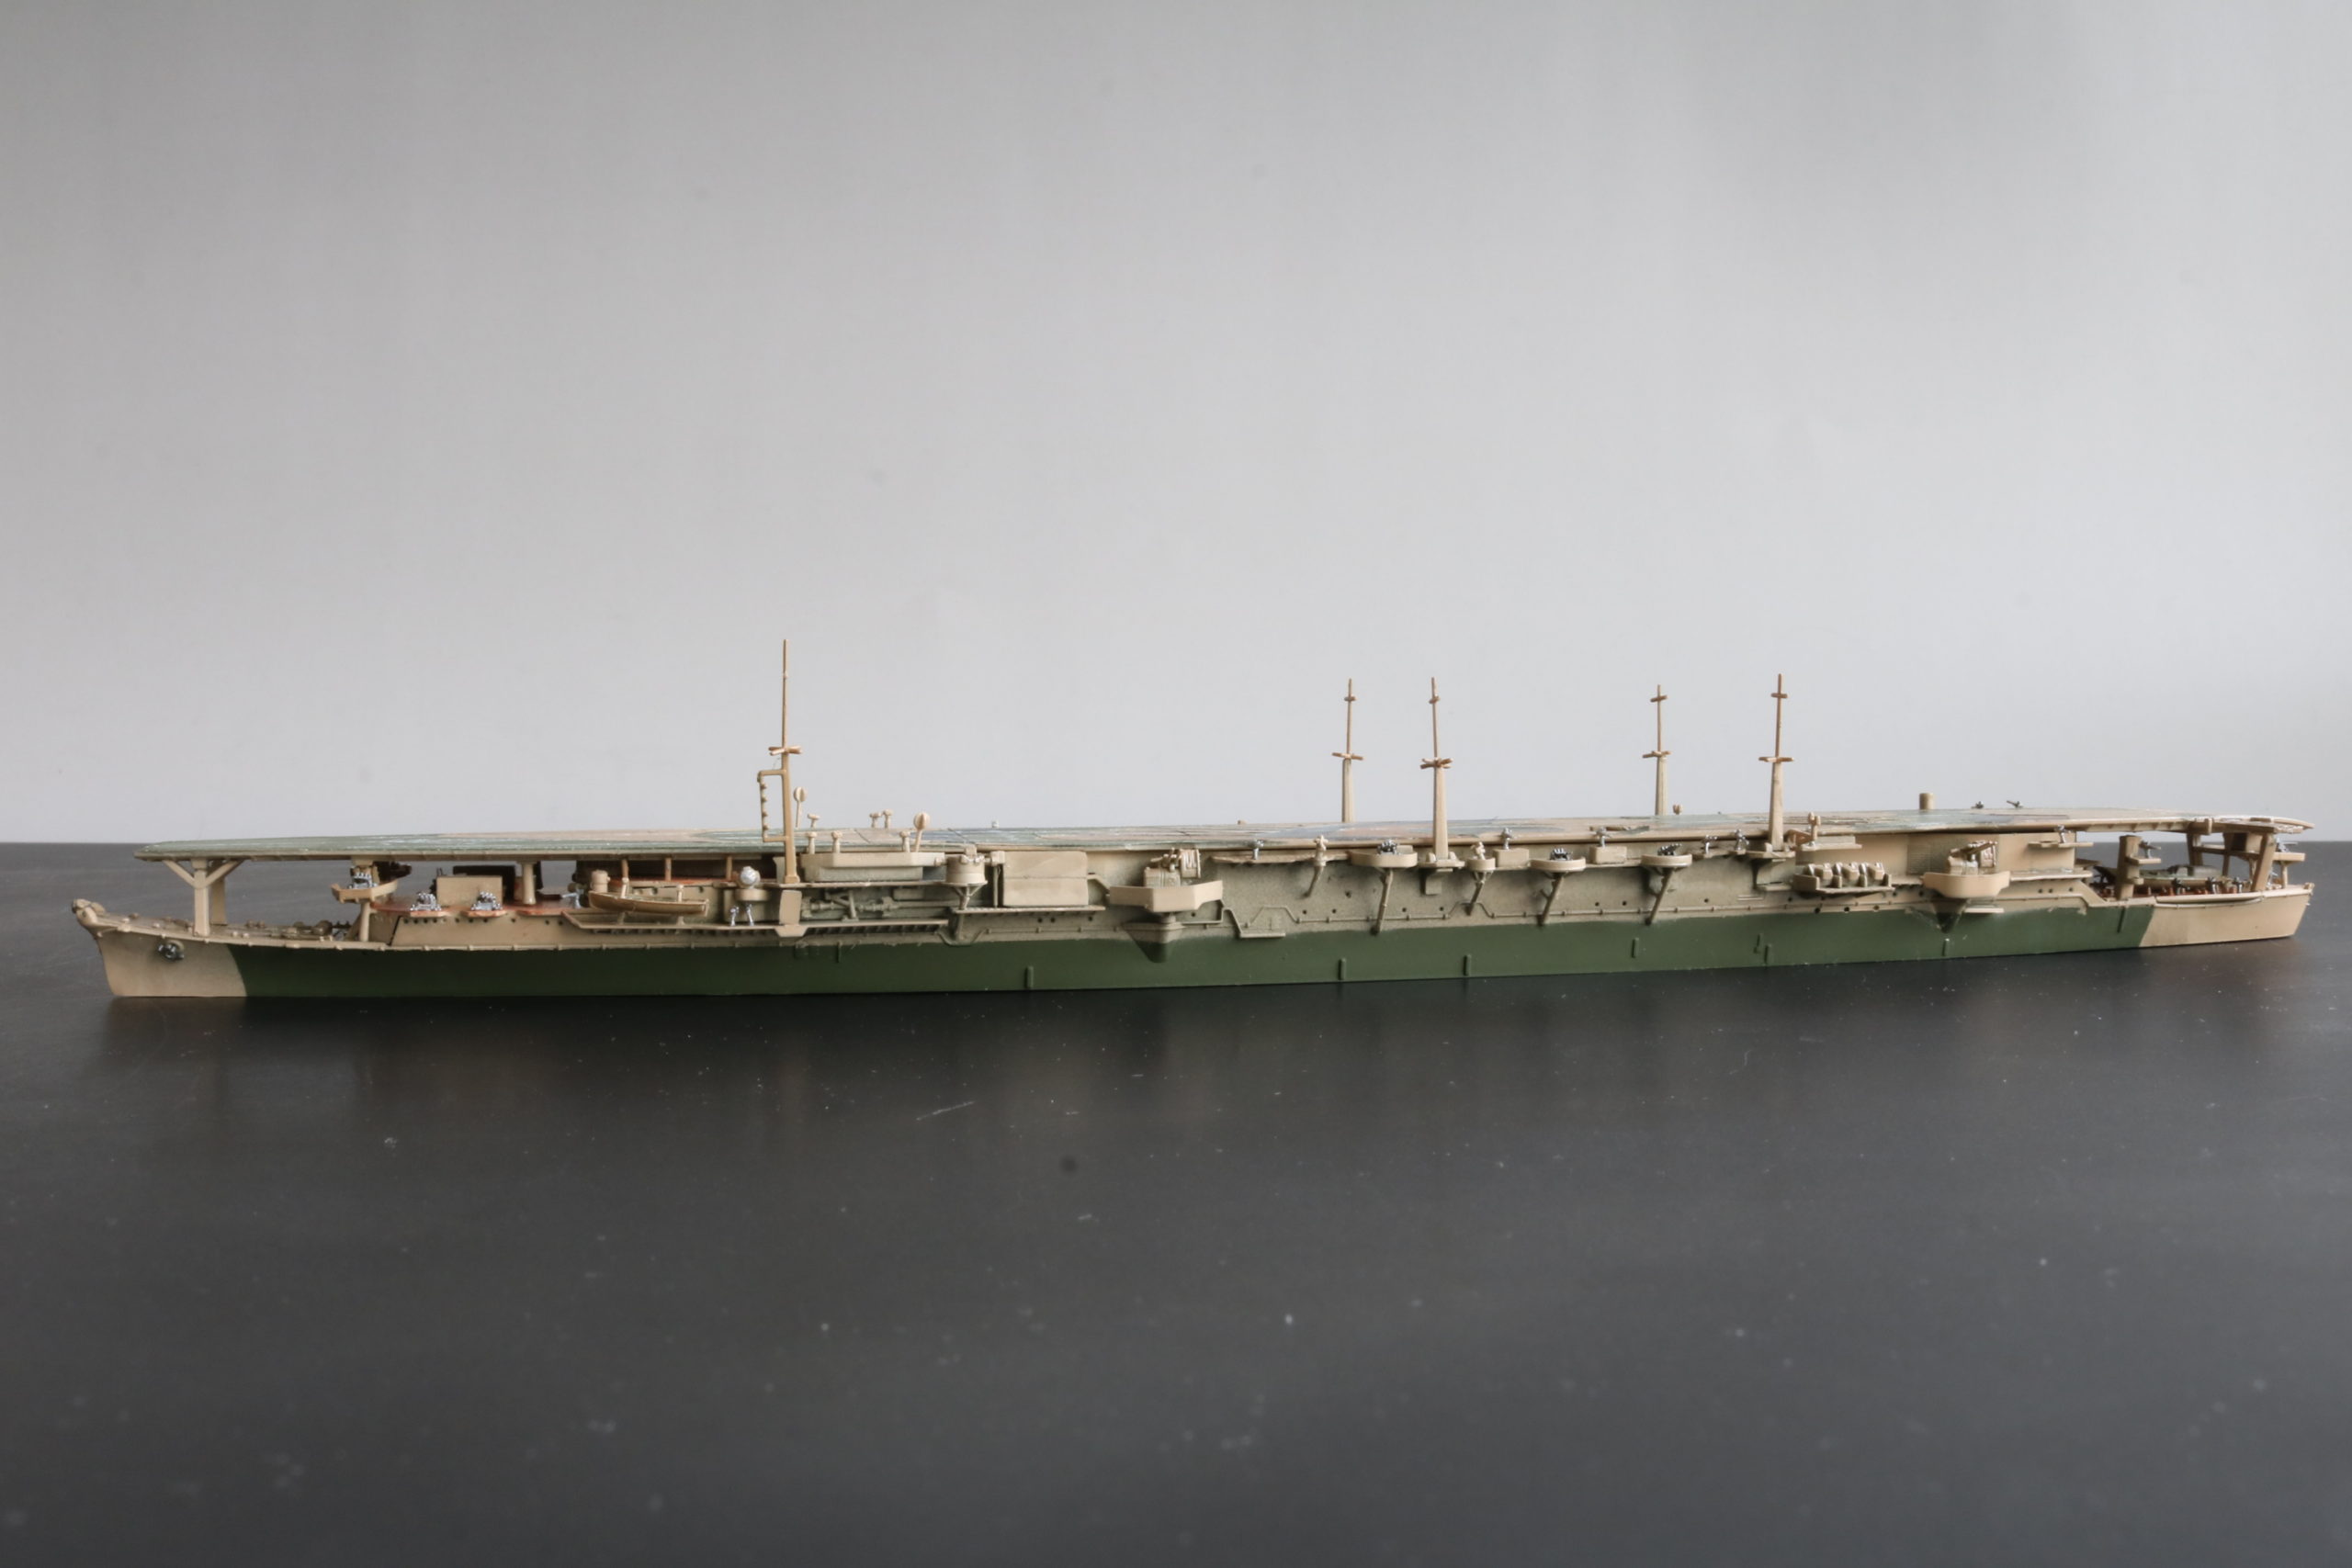 航空母艦 瑞鳳 ,Aircraft carrier Zuihou, 1/700, フジミ模型, Fujimi